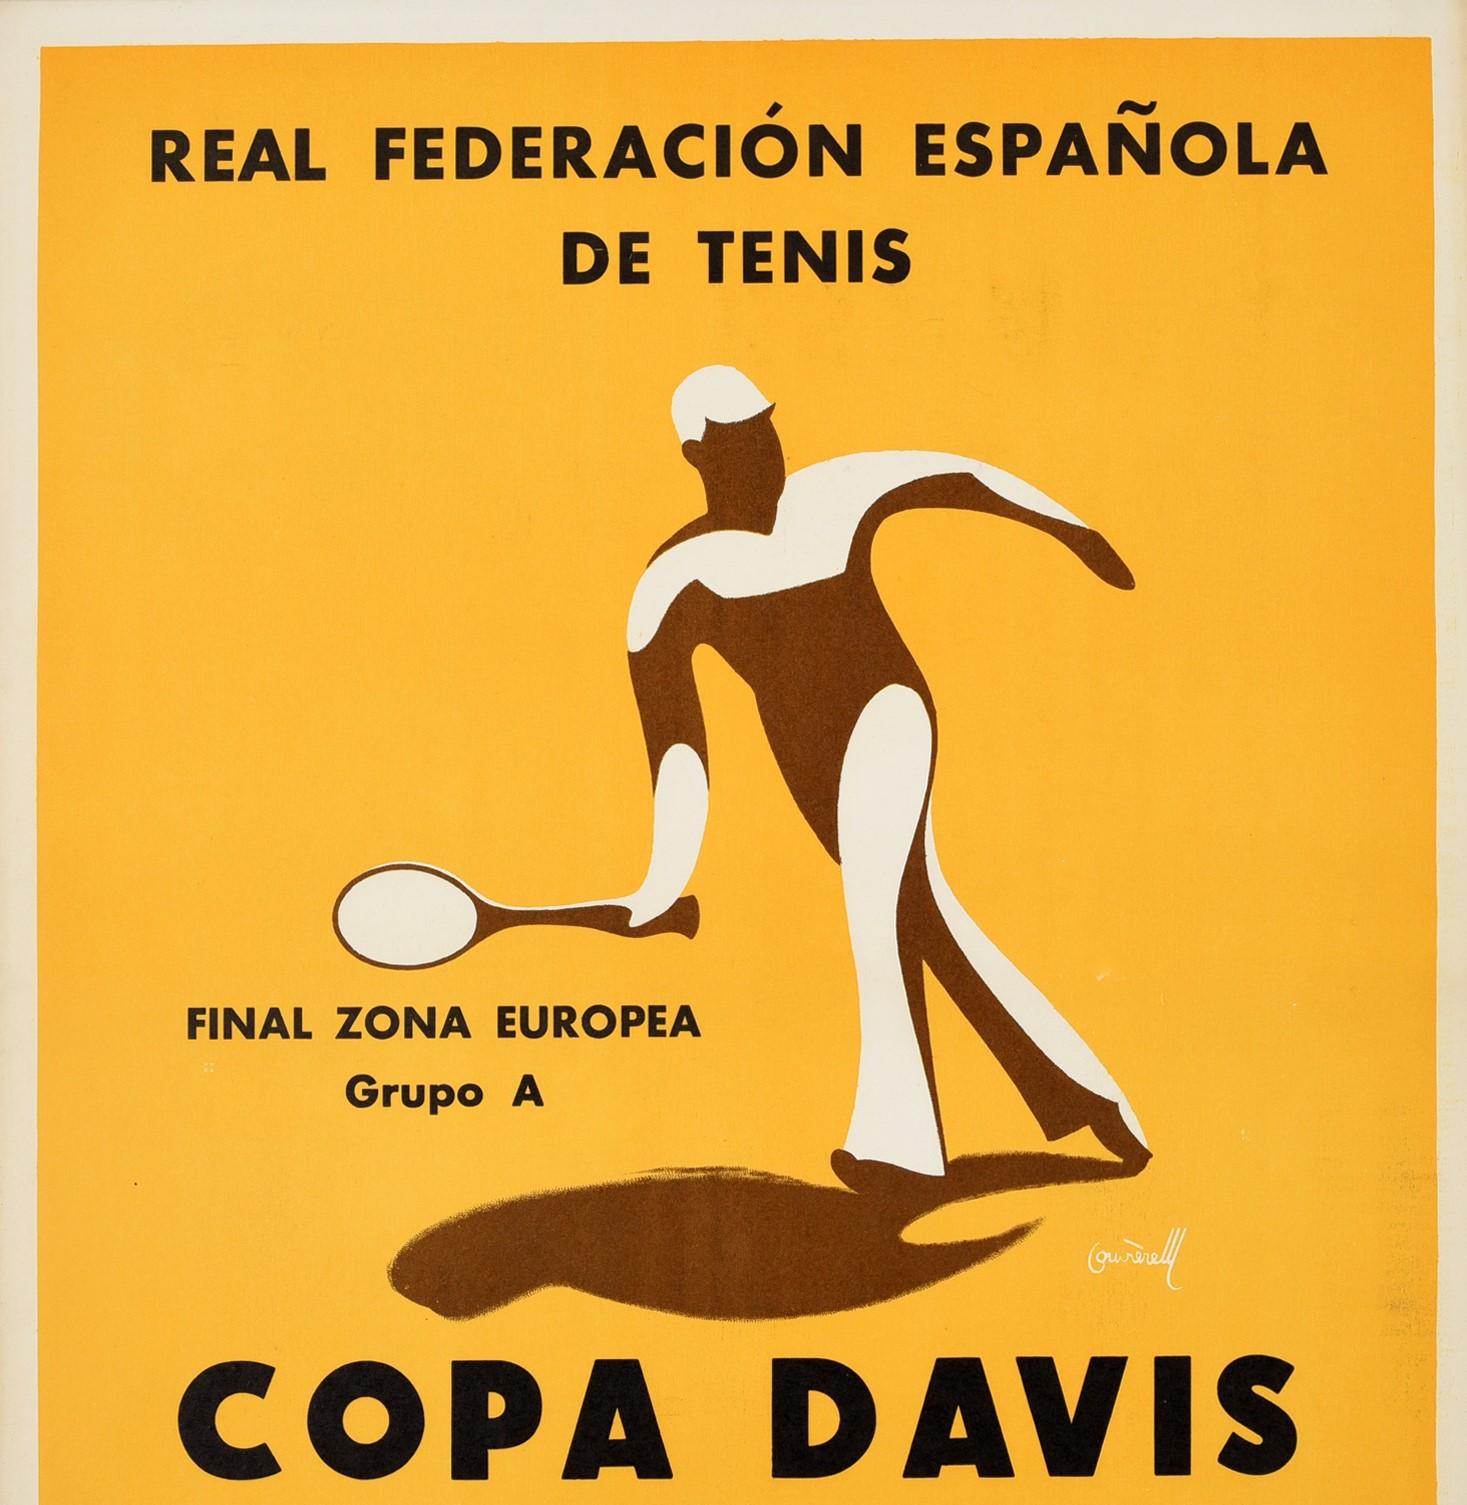 Original-Sportplakat aus dem Jahr 1967 für das Endspiel der Gruppe A des Davis Cups zwischen der UdSSR und Spanien am 14., 15. und 16. Juli in Barcelona. Das Plakat zeigt ein stilisiertes Bild eines Tennisspielers, der mit seinem Tennisschläger vor